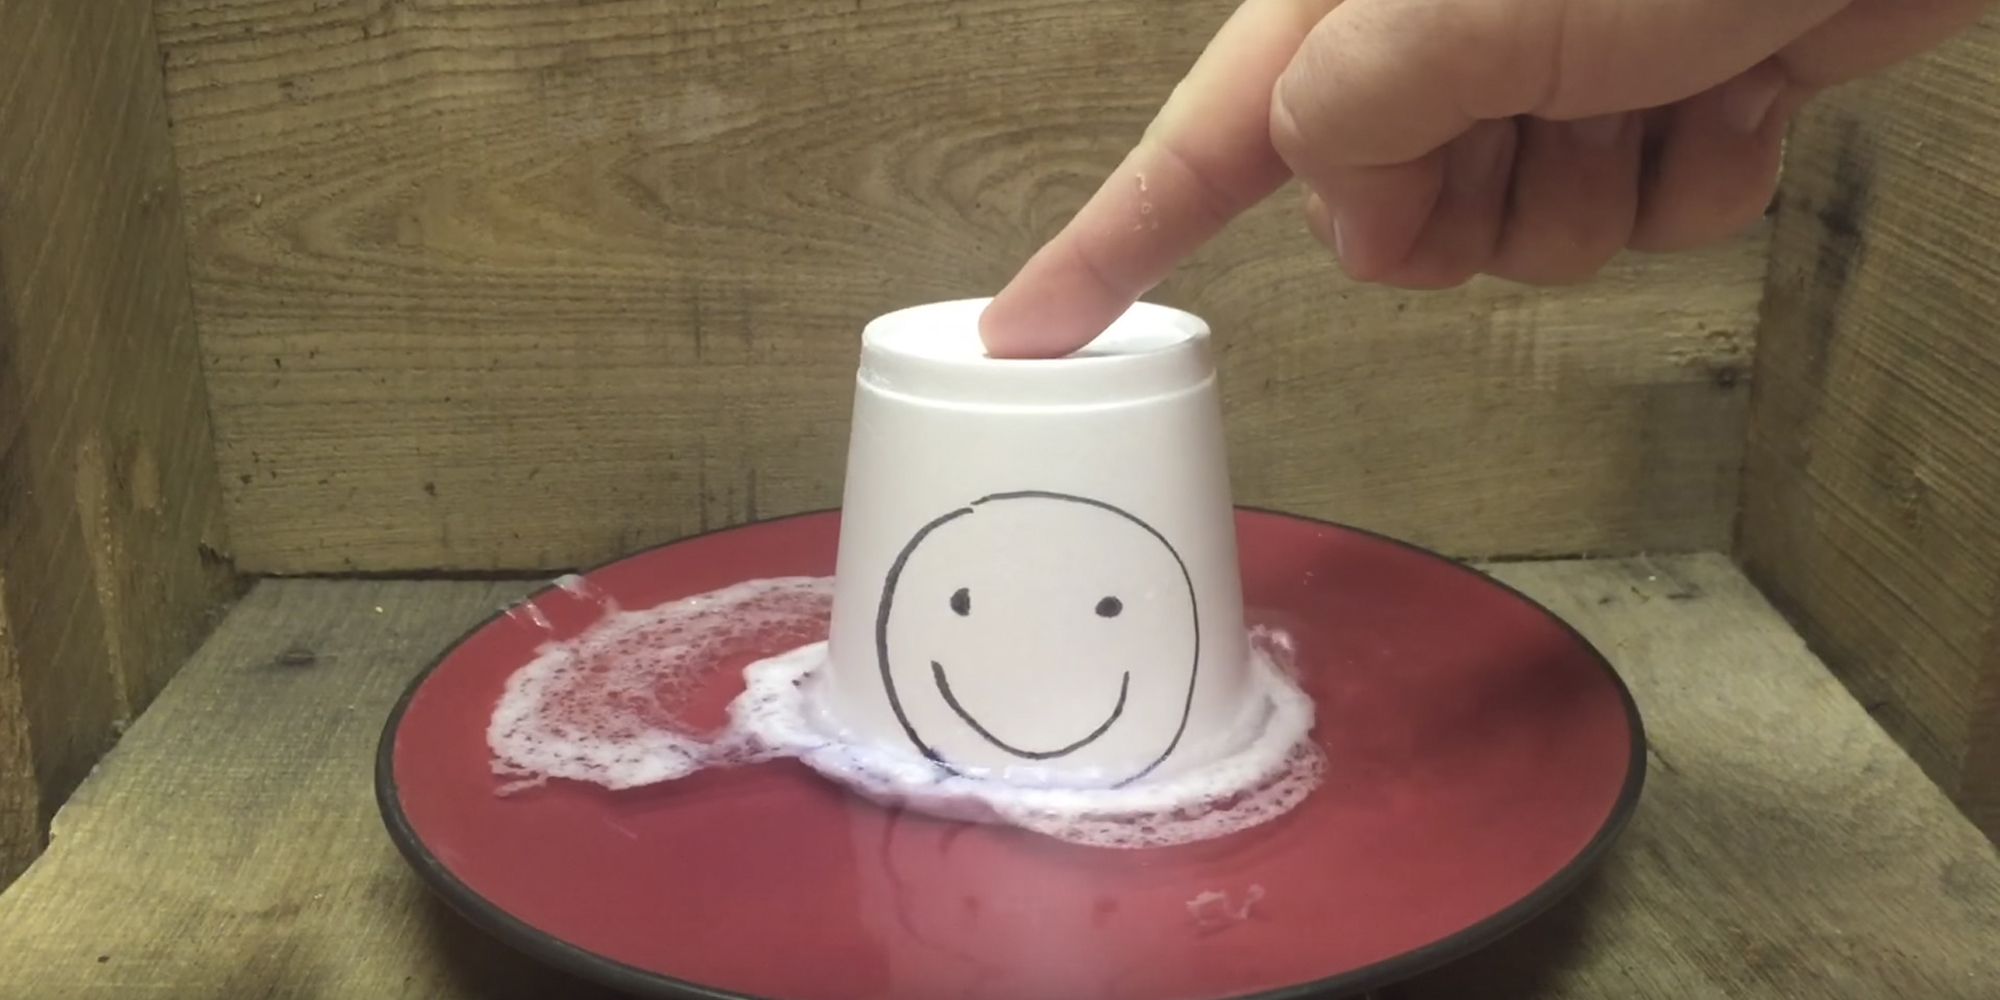 Nail Polish Remover Melts Styrofoam Cup (Video)